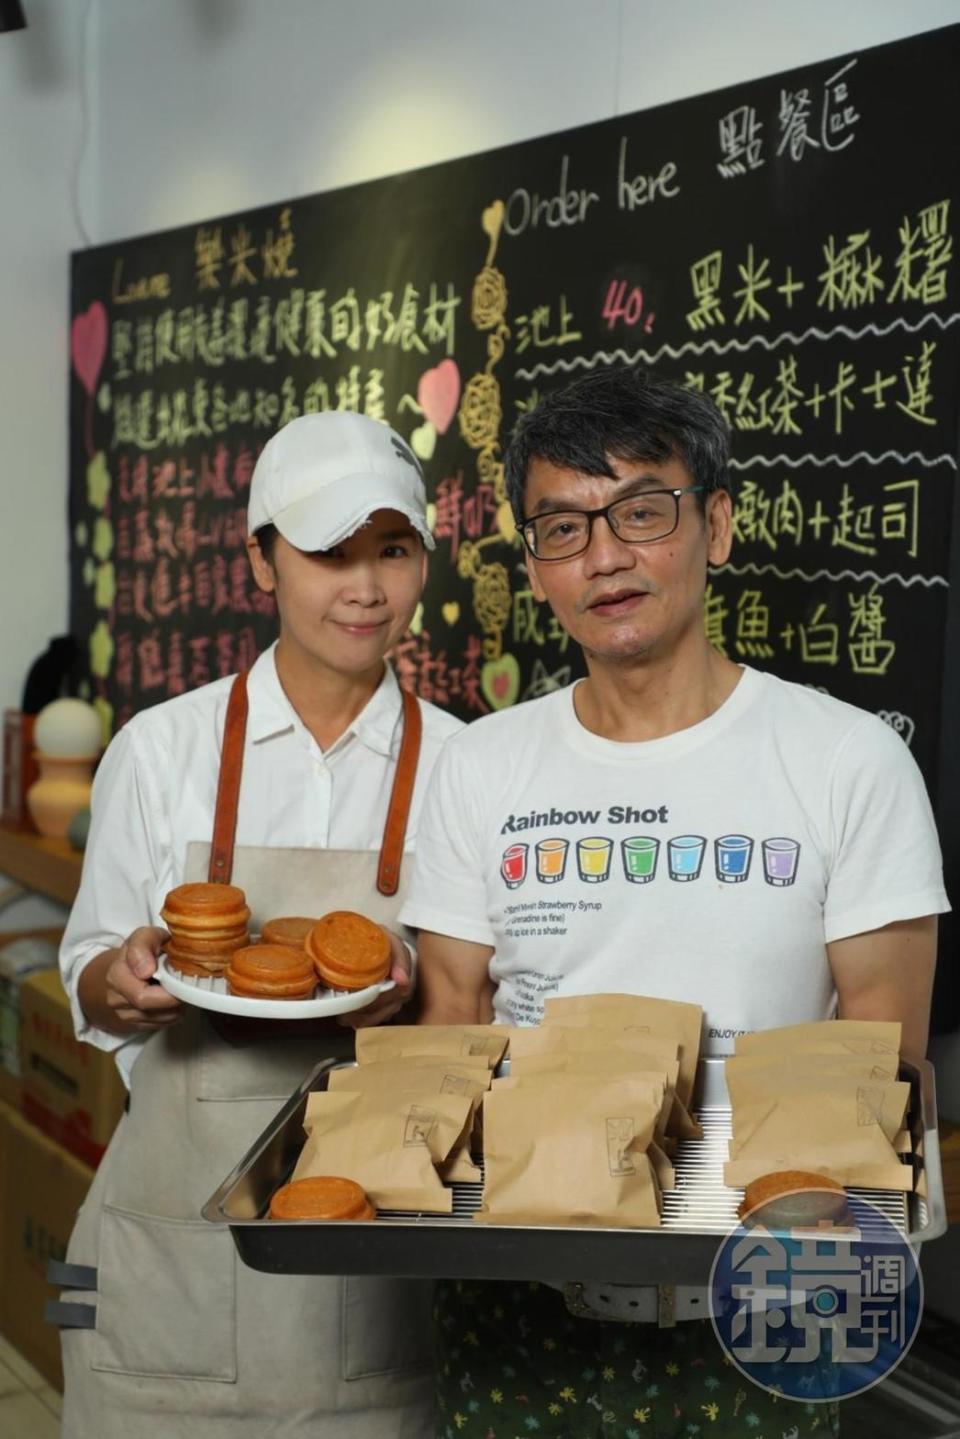 老闆Tengo和太太Mia 在台東開業5年，選用當地食材之餘也努力將其益處傳遞給每個人。